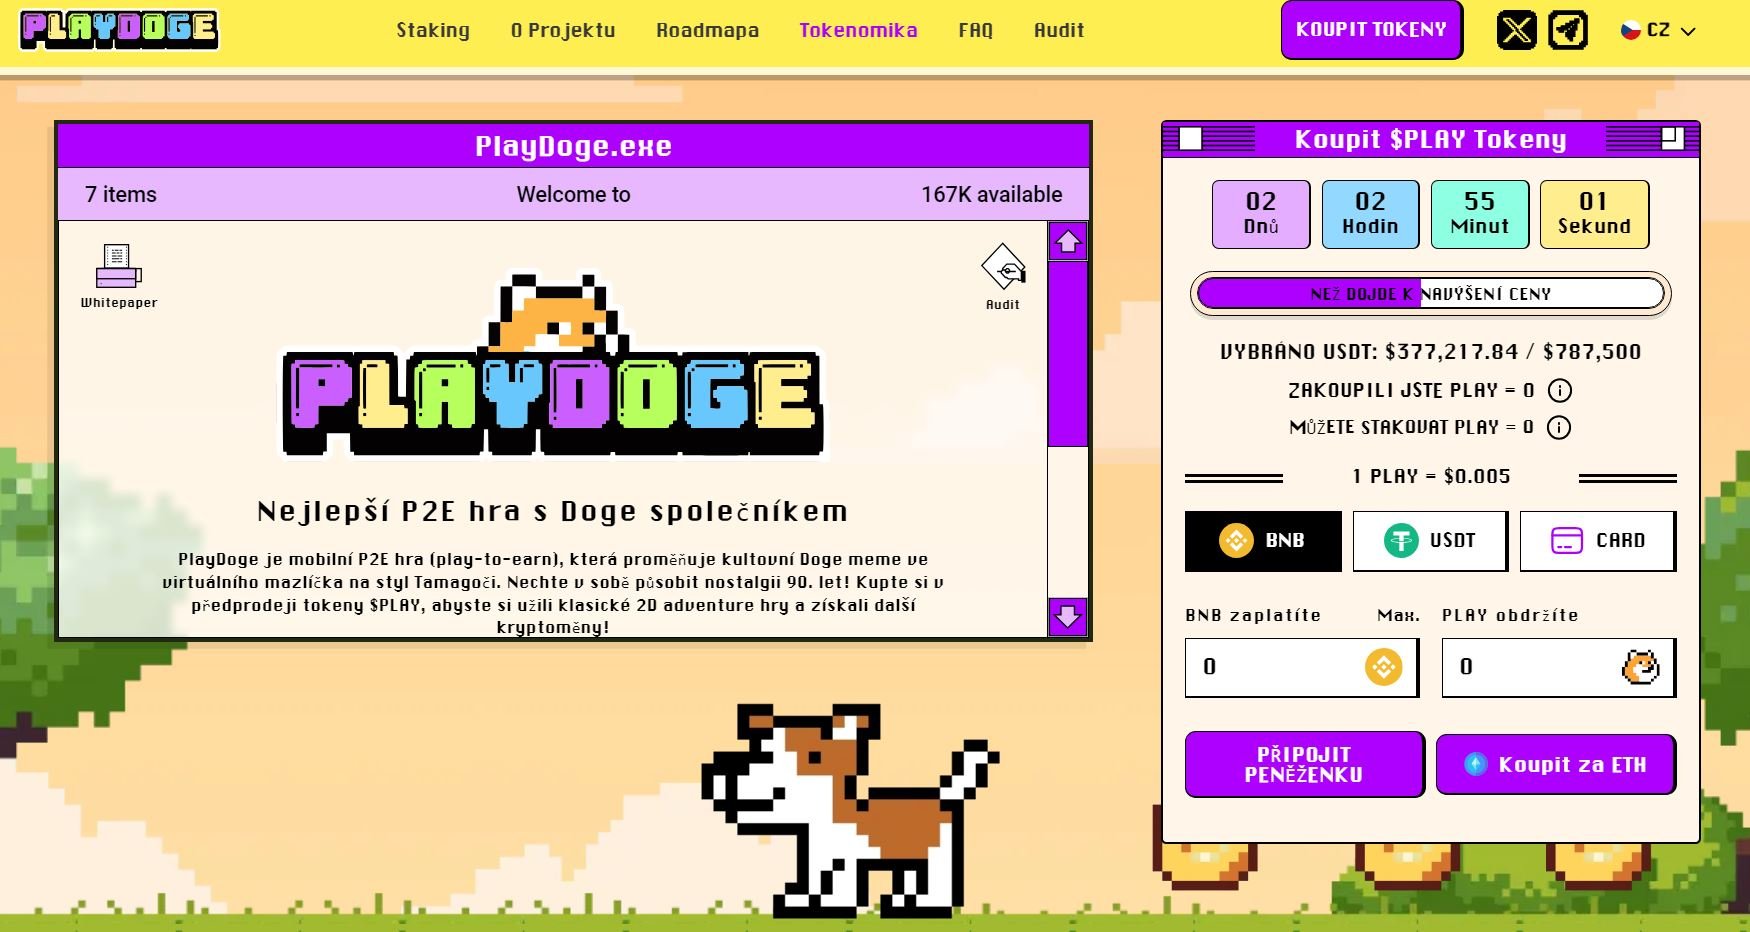 ICO kryptoměny PlayDoge, který přináší investorům nostalgickou vzpomínku na populární Tamagotchi v nové P2E hře